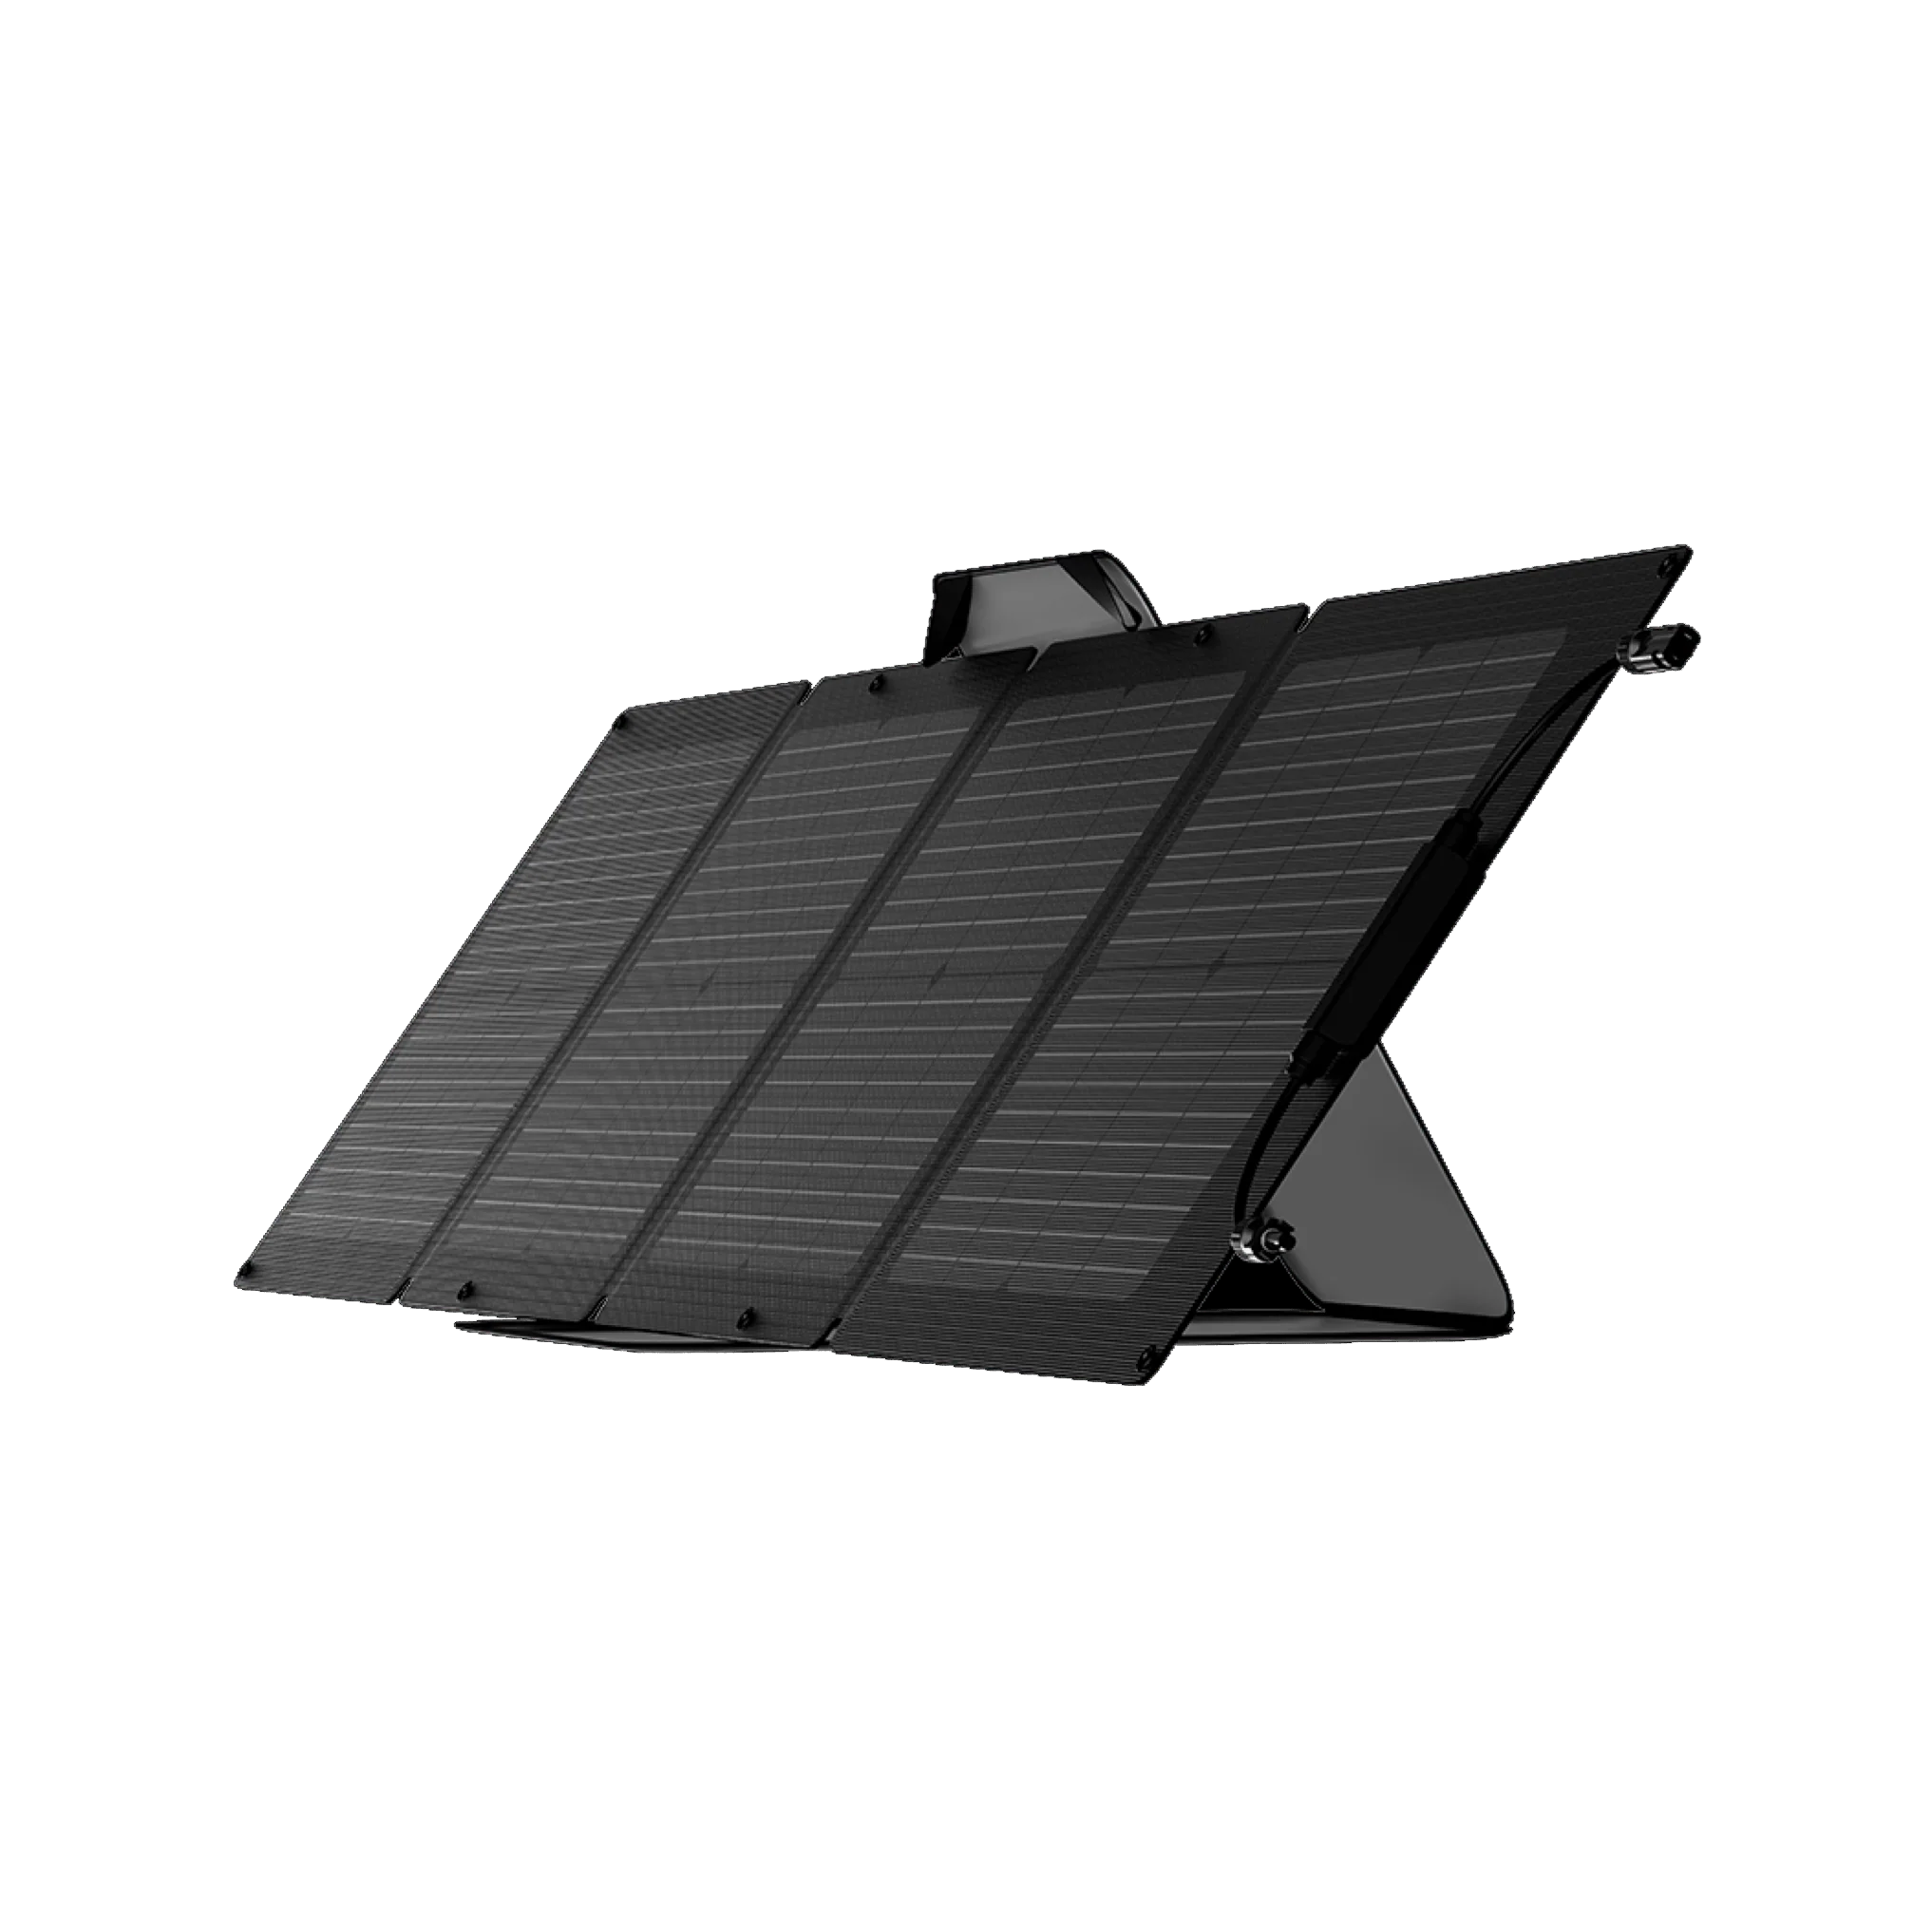 에코플로우 파워뱅크 태양광패널 110W